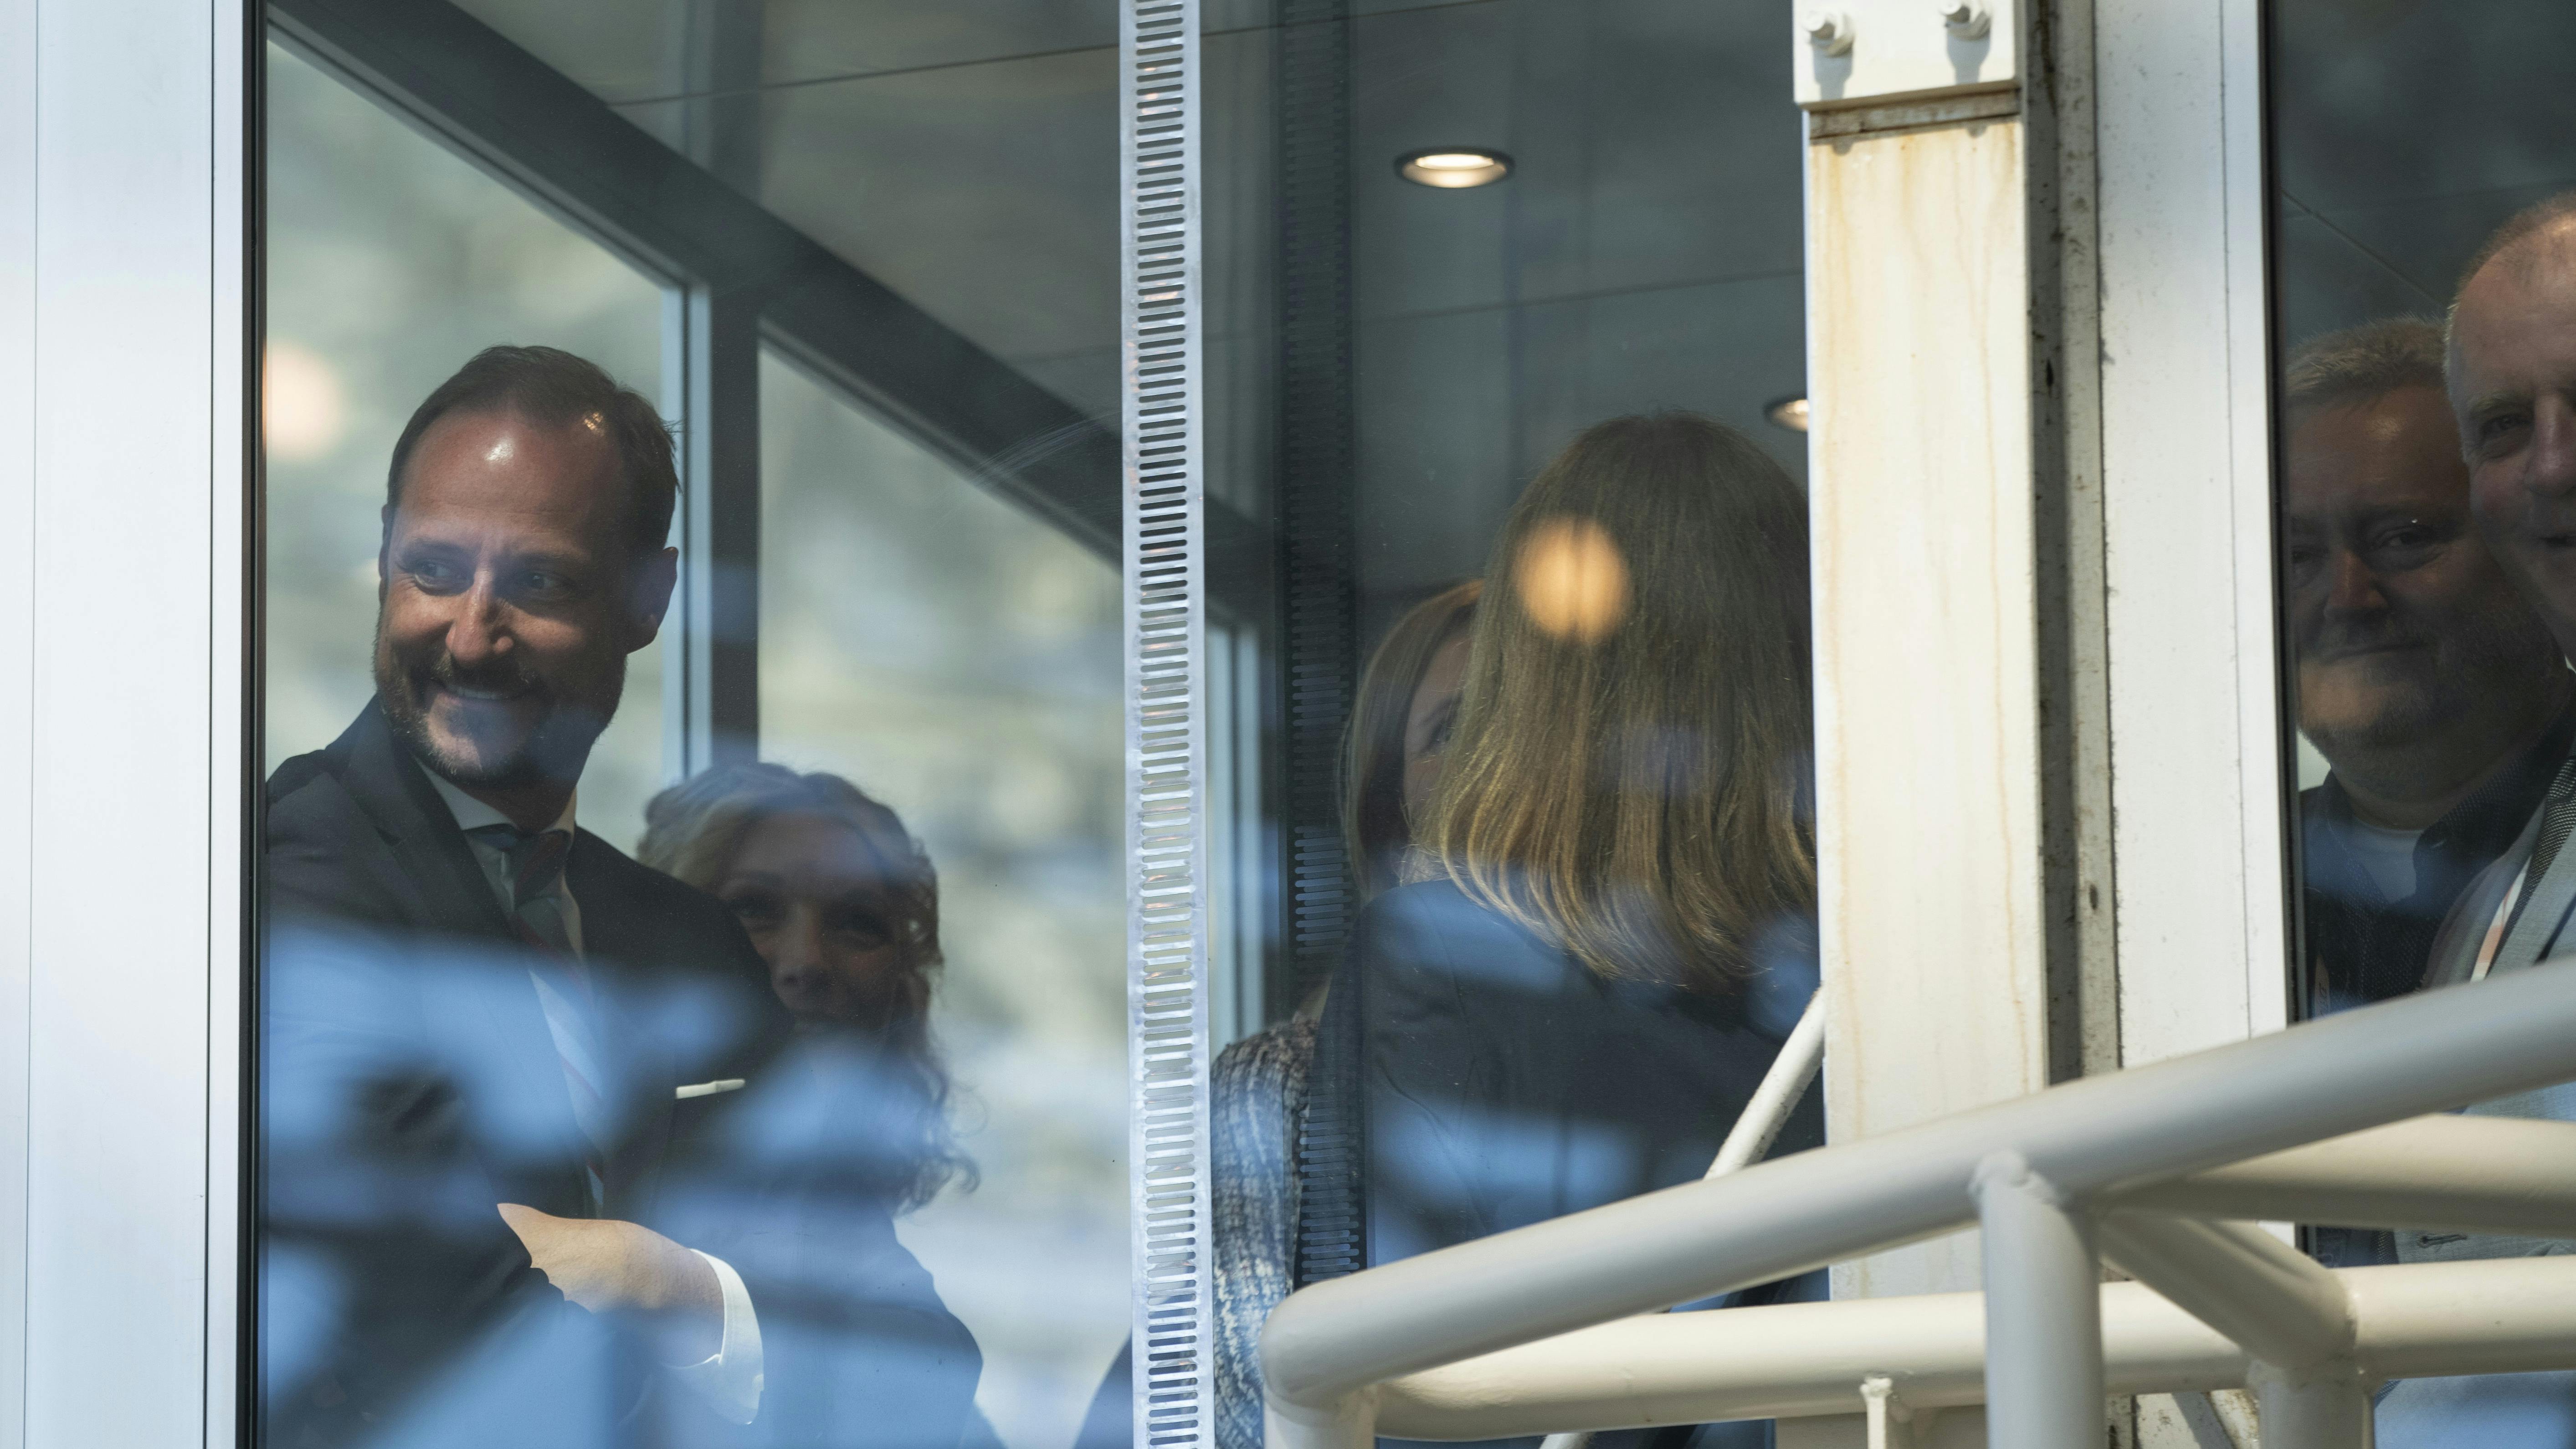 Humøret var højt og smilet stort, til trods for at kronprins Haakon sad fast i en elevator. 